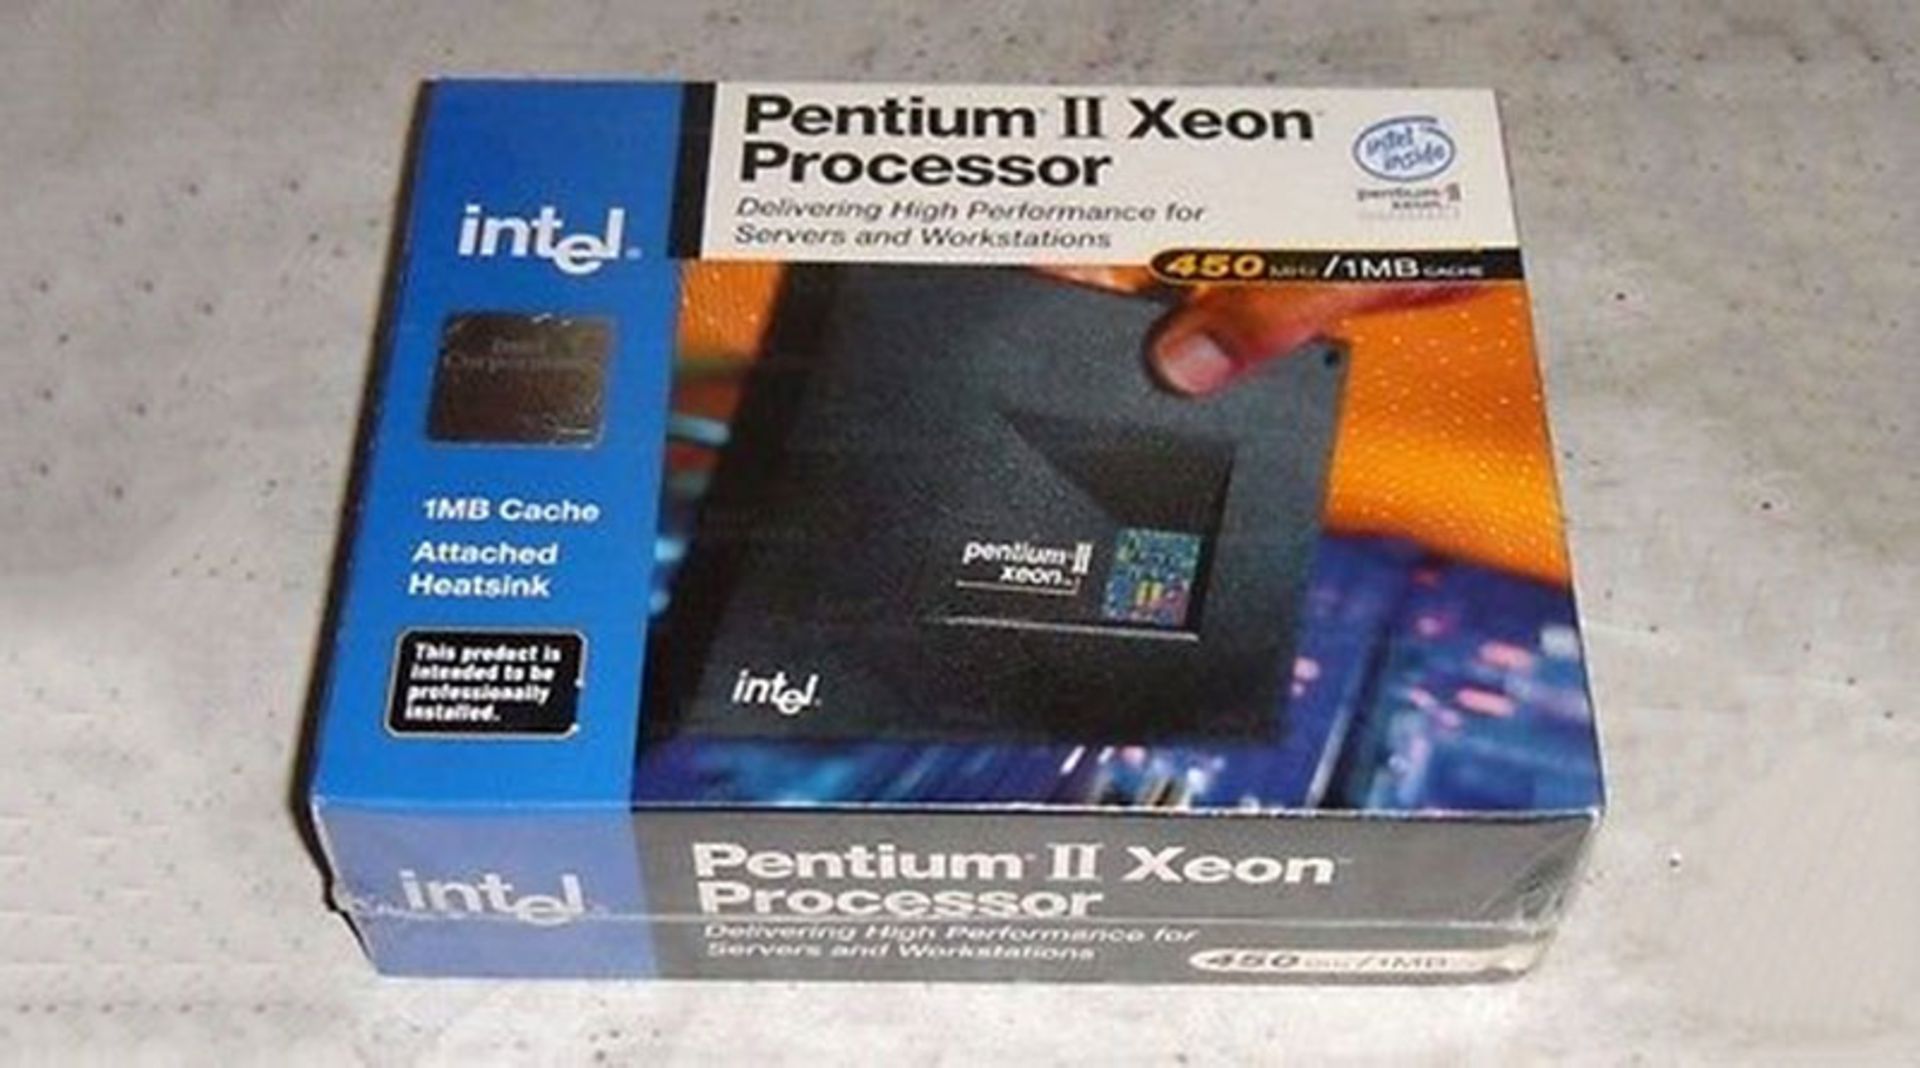 مرجع متخصصين ايران پردازنده اينتل پنتيوم ii زئون intel Pentium II xeon